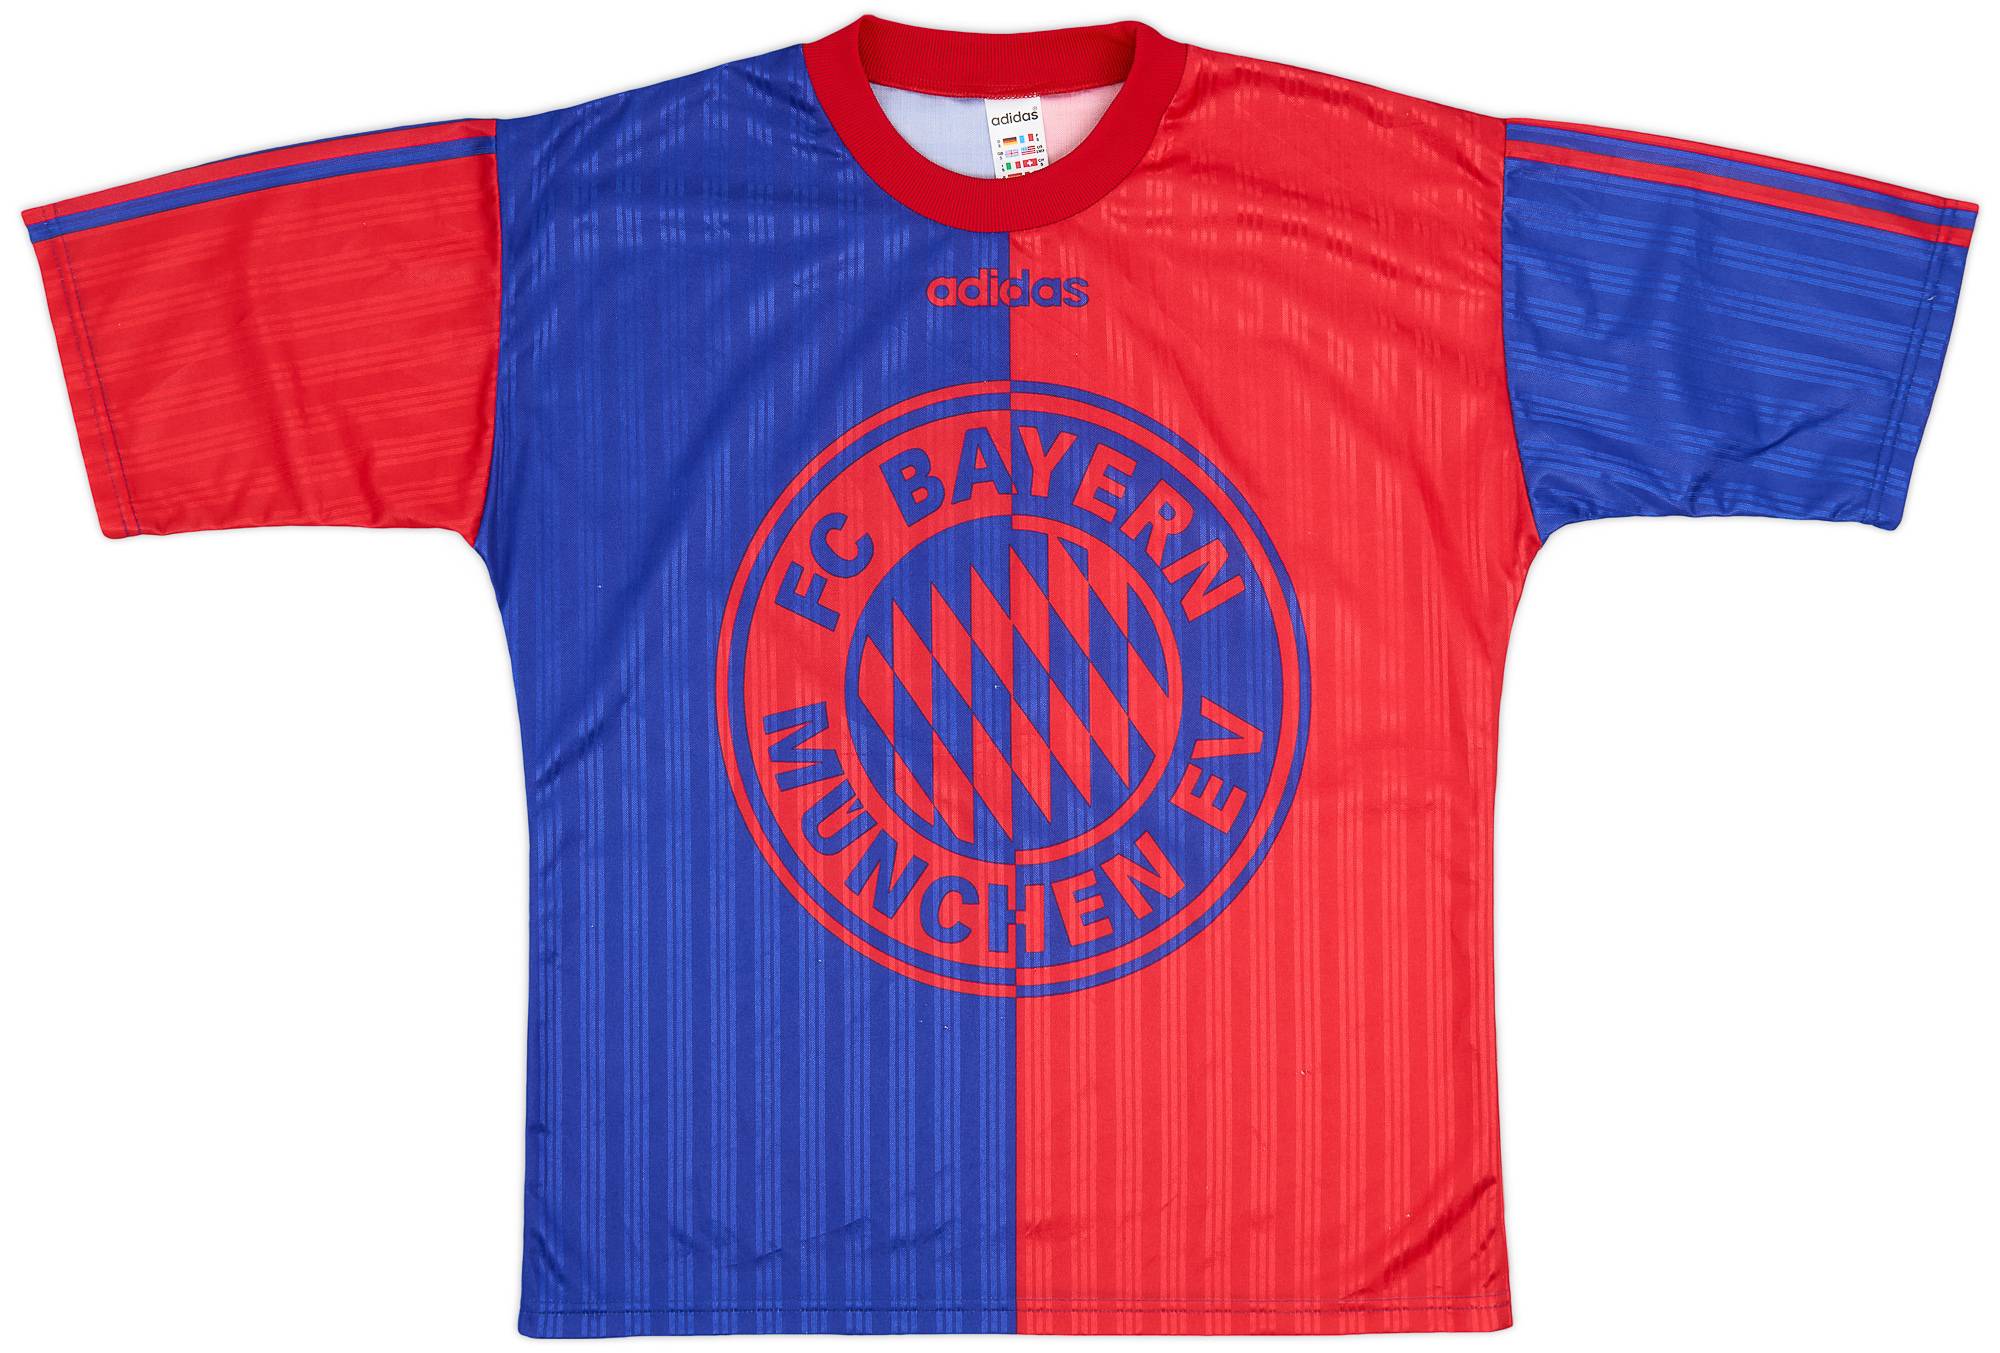 1995-96 Bayern Munich adidas Training Shirt - 9/10 - (S)